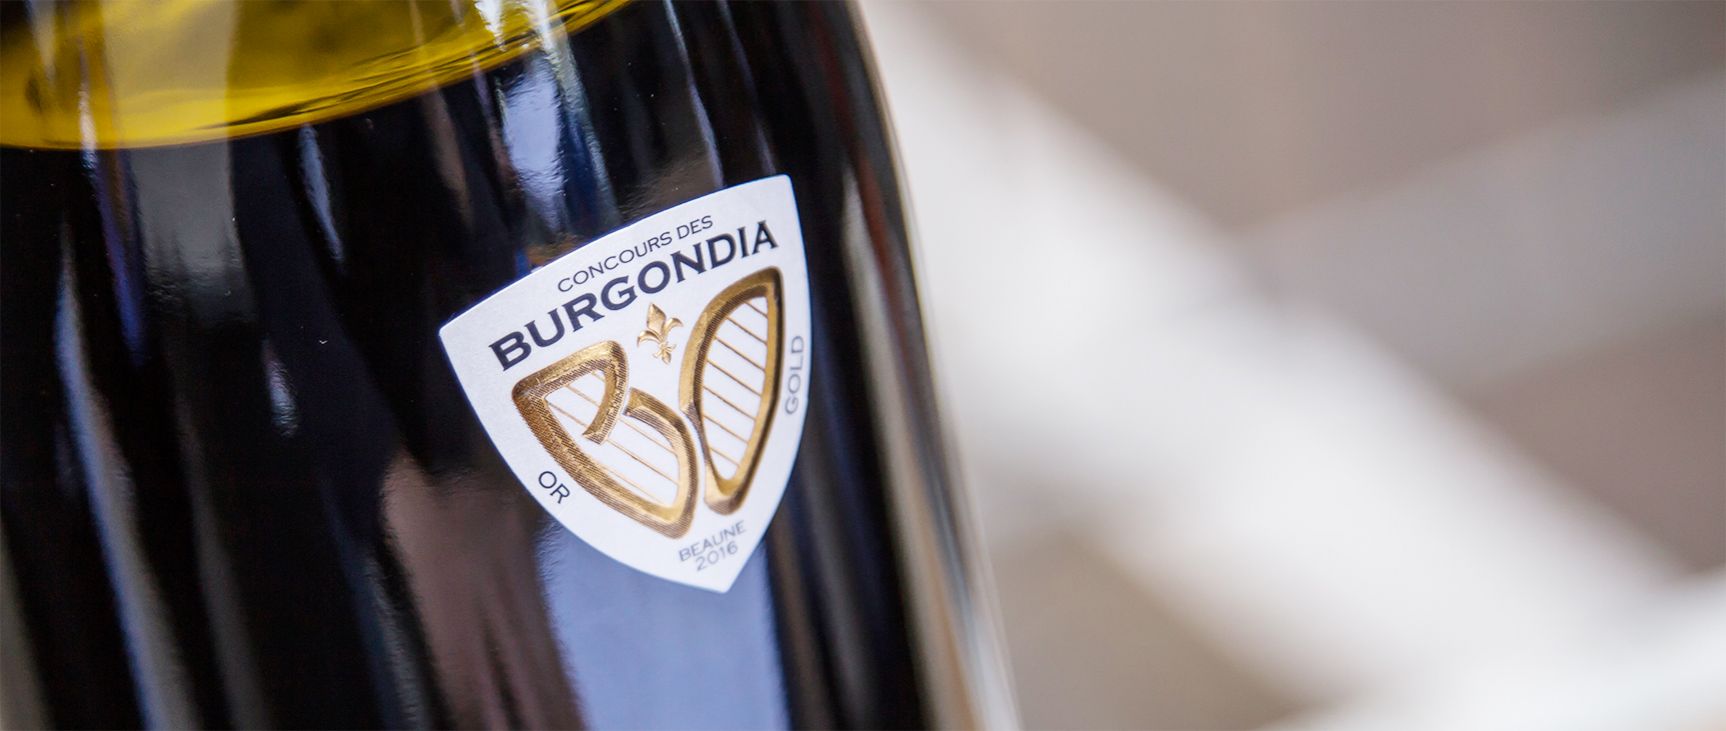 Burgondia Logo identité visuelle simulation